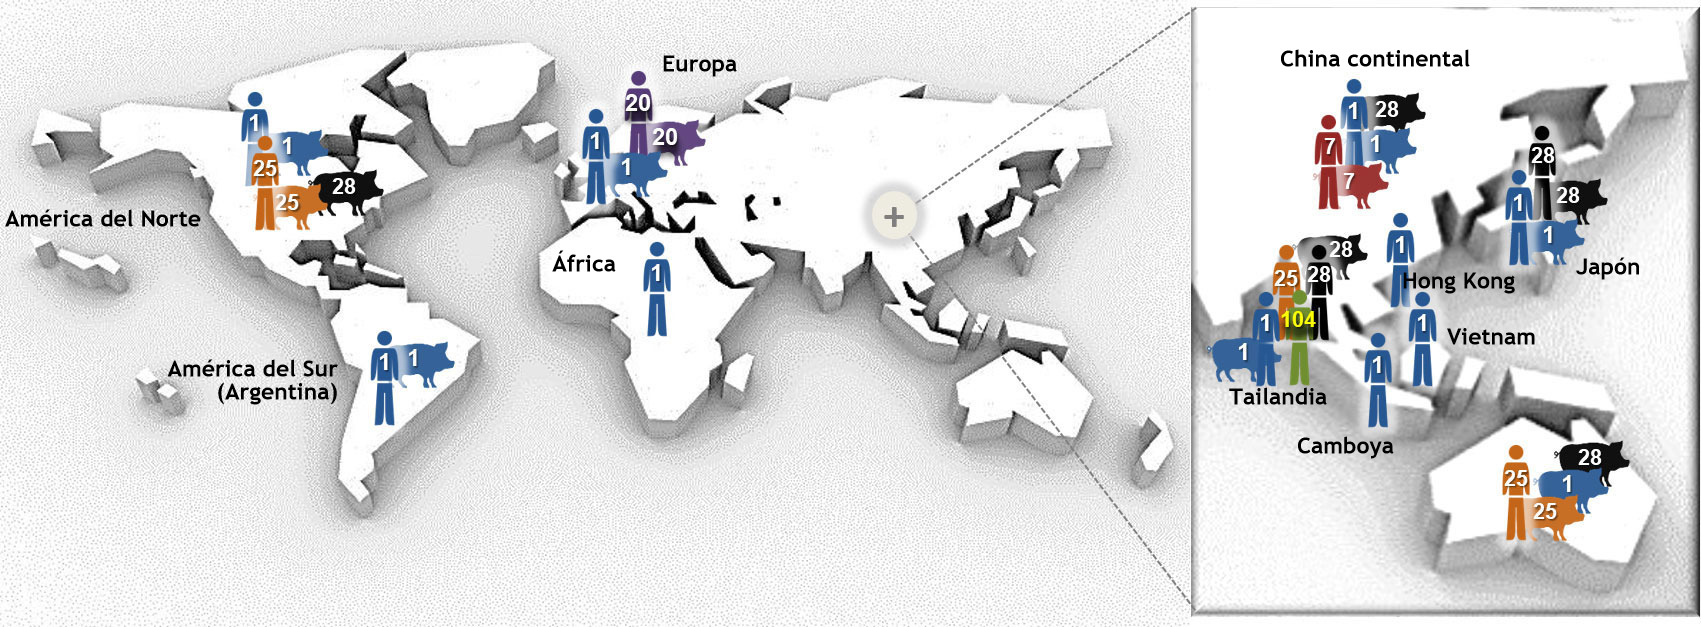 <p>Figura 1. Principales tipos de secuencia (STs) del serotipo 2 de <em>Streptococcus suis</em> determinados por&nbsp;Tipificaci&oacute;n multilocus de secuencias (MLST). Las cepas ST1 serotipo 2 se asocian principalmente a la enfermedad tanto de cerdos (donde hay datos disponibles) y humanos en Europa, Asia, &Aacute;frica y Am&eacute;rica del Sur (Argentina). ST7, una variante de locus &uacute;nico de ST1, es end&eacute;mica la China continental. La situaci&oacute;n es diferente en Am&eacute;rica del Norte, donde se han descrito pocos casos cl&iacute;nicos de ST1 en cerdos y s&oacute;lo 1 en humanos. De hecho, las cepas norteamericanas del serotipo 2 pertenecen principalmente a ST25 (humanos y cerdos) y a ST28 (s&oacute;lo cerdos). El &uacute;ltimo ST tambi&eacute;n est&aacute; asociado a casos cl&iacute;nicos porcinos en la China continental, Australia, Jap&oacute;n y Tailandia. Curiosamente, Jap&oacute;n y Tailandia son los &uacute;nicos pa&iacute;ses que tambi&eacute;n est&aacute;n describiendo casos humanos por ST28. Adem&aacute;s de en Am&eacute;rica del Norte, se han descrito casos en humanos por ST25 en Australia y Tailandia. Finalmente, ST20 s&oacute;lo tiene prevalencia en Europa (especialmente en Holanda). En esta gr&aacute;fica, los n&uacute;meros (1, 20, 25, 28, 104) de los distintos hospedadores indican distintos STs (p.e.: ST1, ST20, ST25, ST28, ST104) y cada ST ha sido dibujado con un color distinto. <em>La figura ha sido modificada a partir de: Segura M, Fittipaldi N, Calzas C, Gottschalk M. Critical Streptococcus suis virulence factors: Are they all really critical? Trends Microbiol. 2017; 25(7):585-599. doi: 10.1016/j.tim.2017.02.005, with copyright permission.</em></p>
